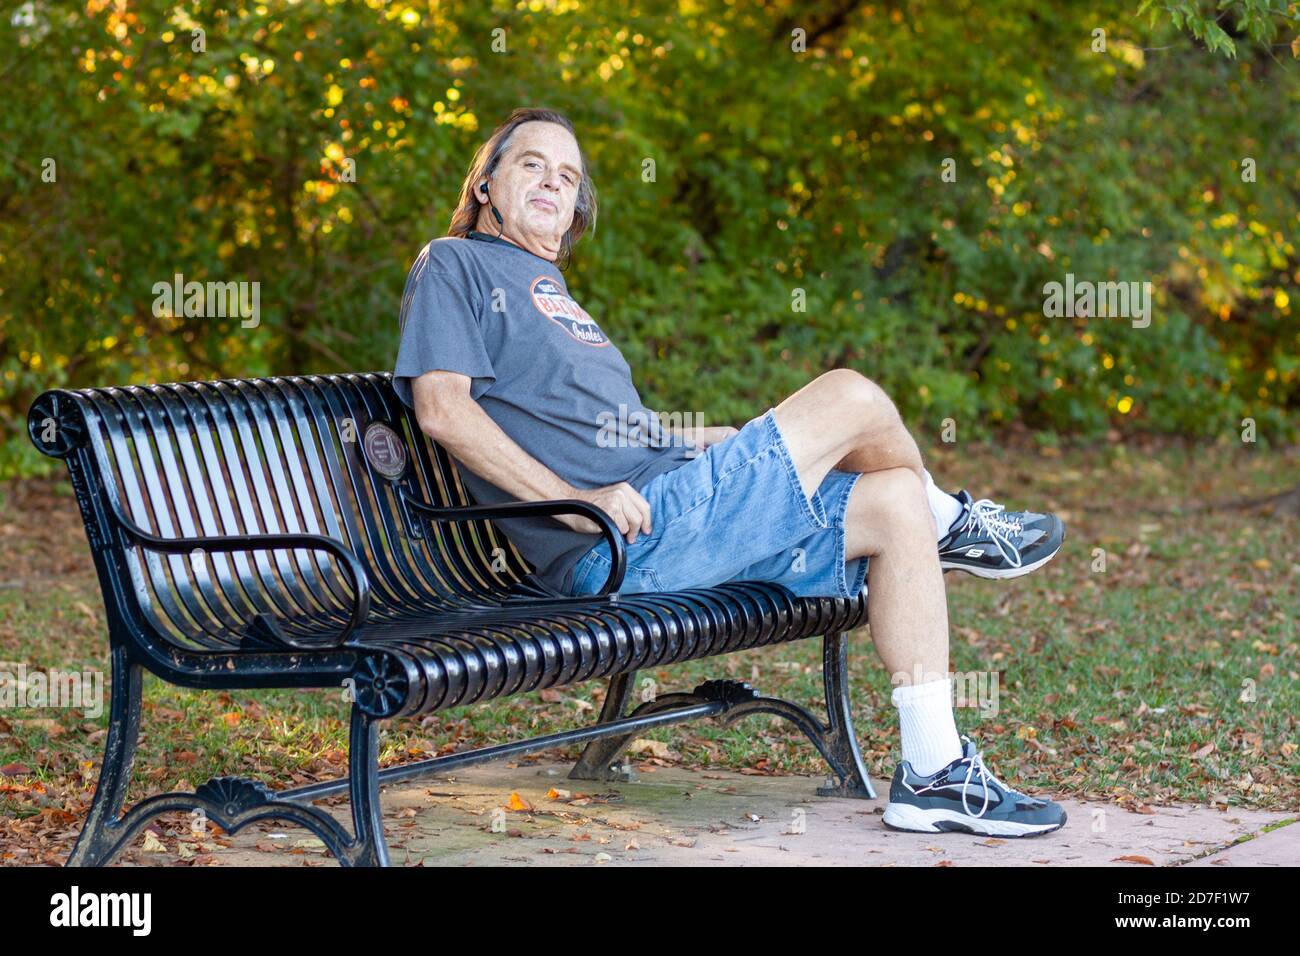 Frederick, MD, USA 10/14/2020: L'uomo di mezza età dai capelli lunghi si rilassa su una panchina del parco dopo un'escursione. Ruota la testa mentre è seduto a gambe incrociate Foto Stock